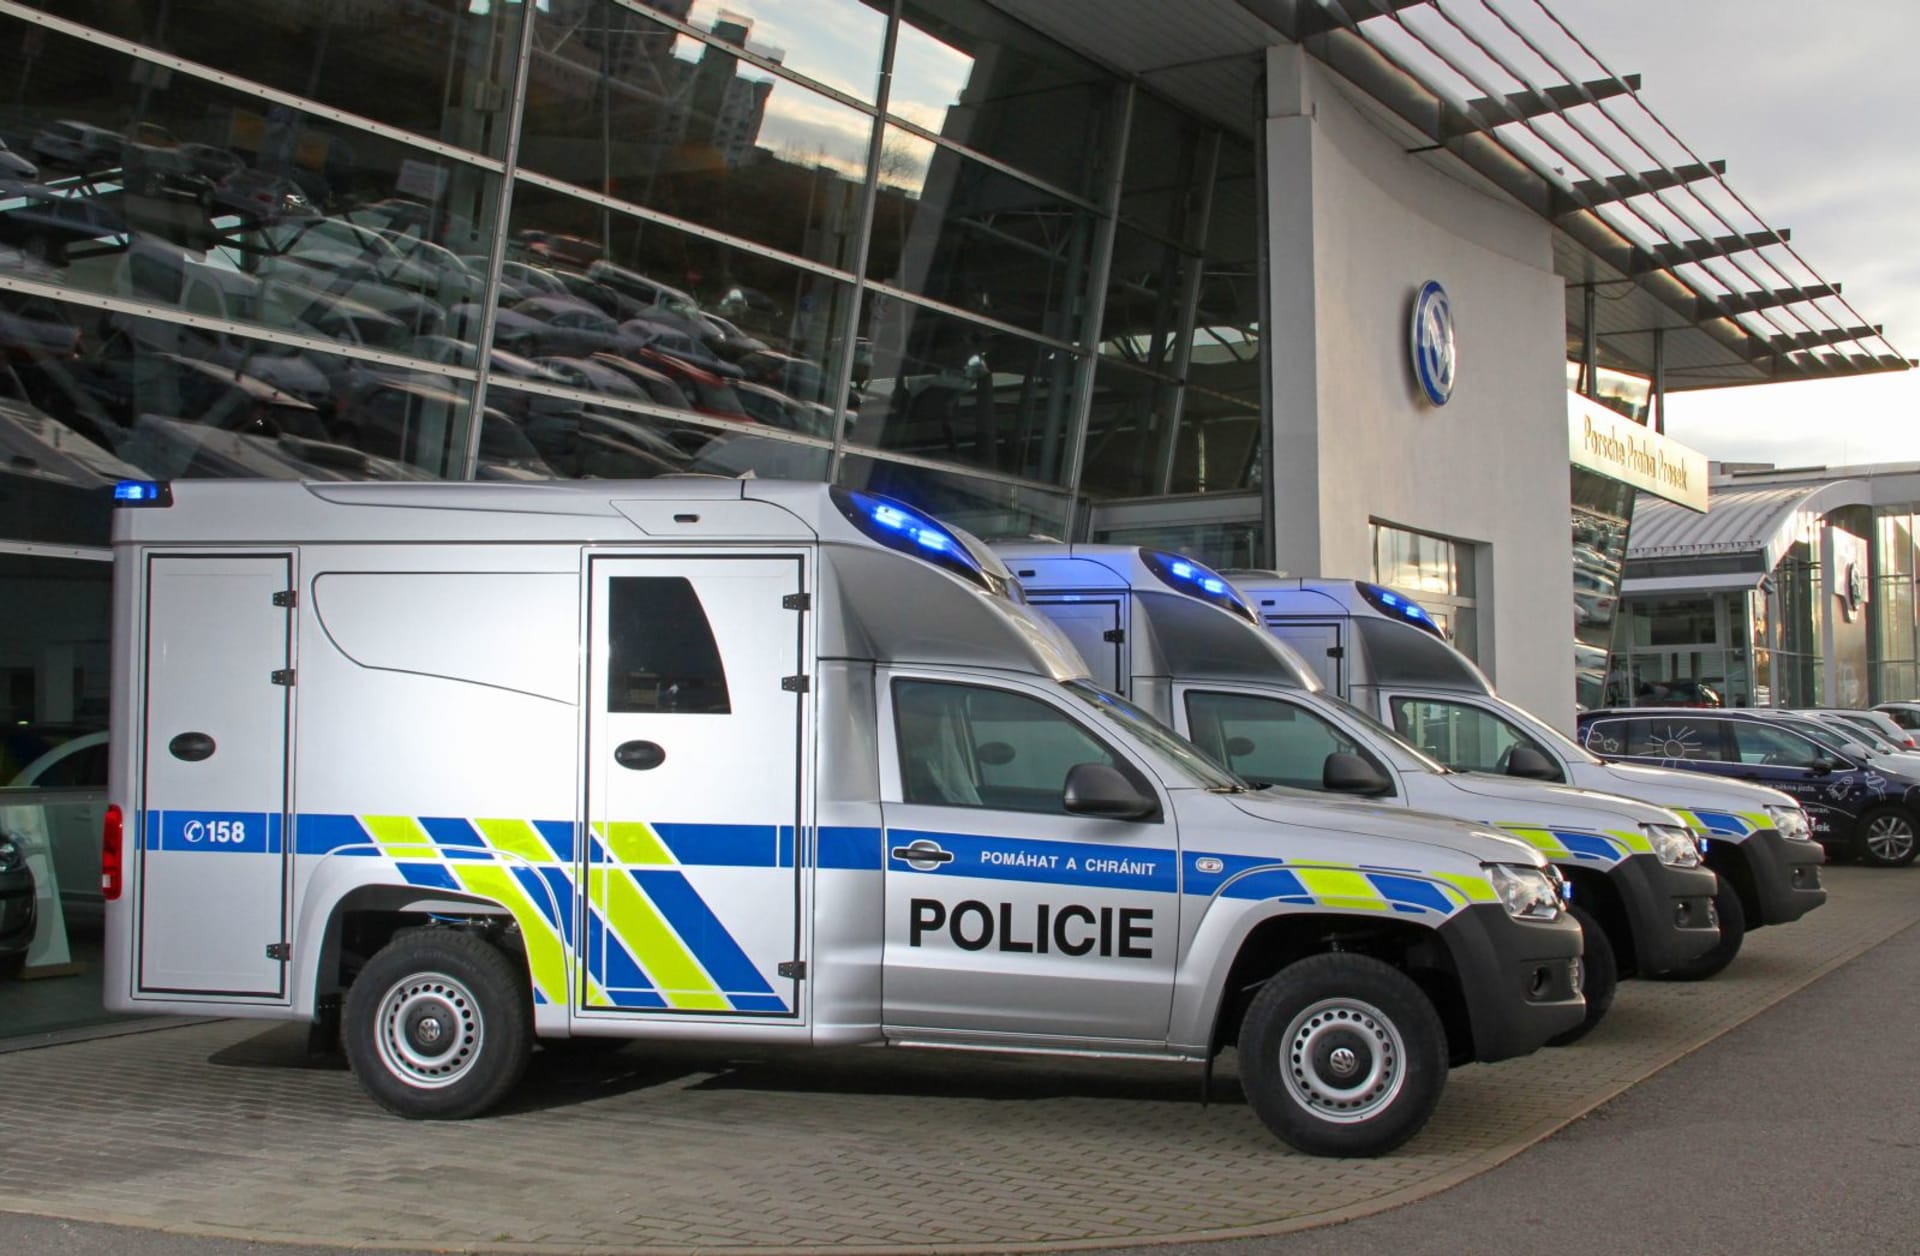 Terénní Pick-upy s nástavbou Volkswagen Amarok jsou určeny pro potřeby kriminalistů.